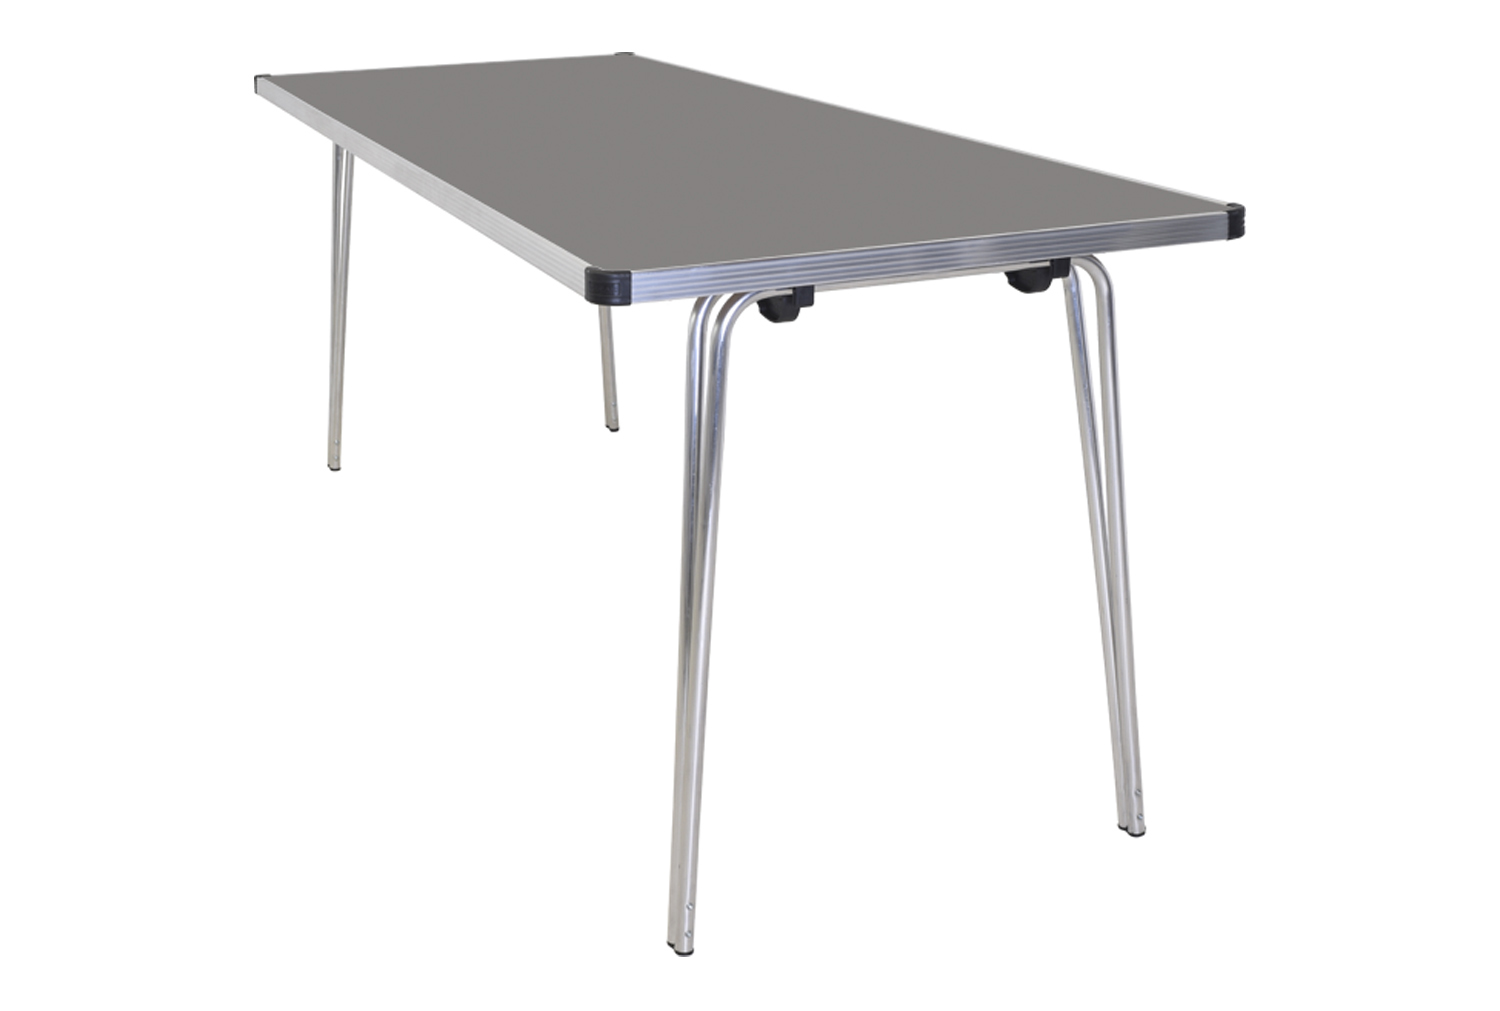 Gopak Contour Folding Table, 122wx76d (cm), Storm Grey